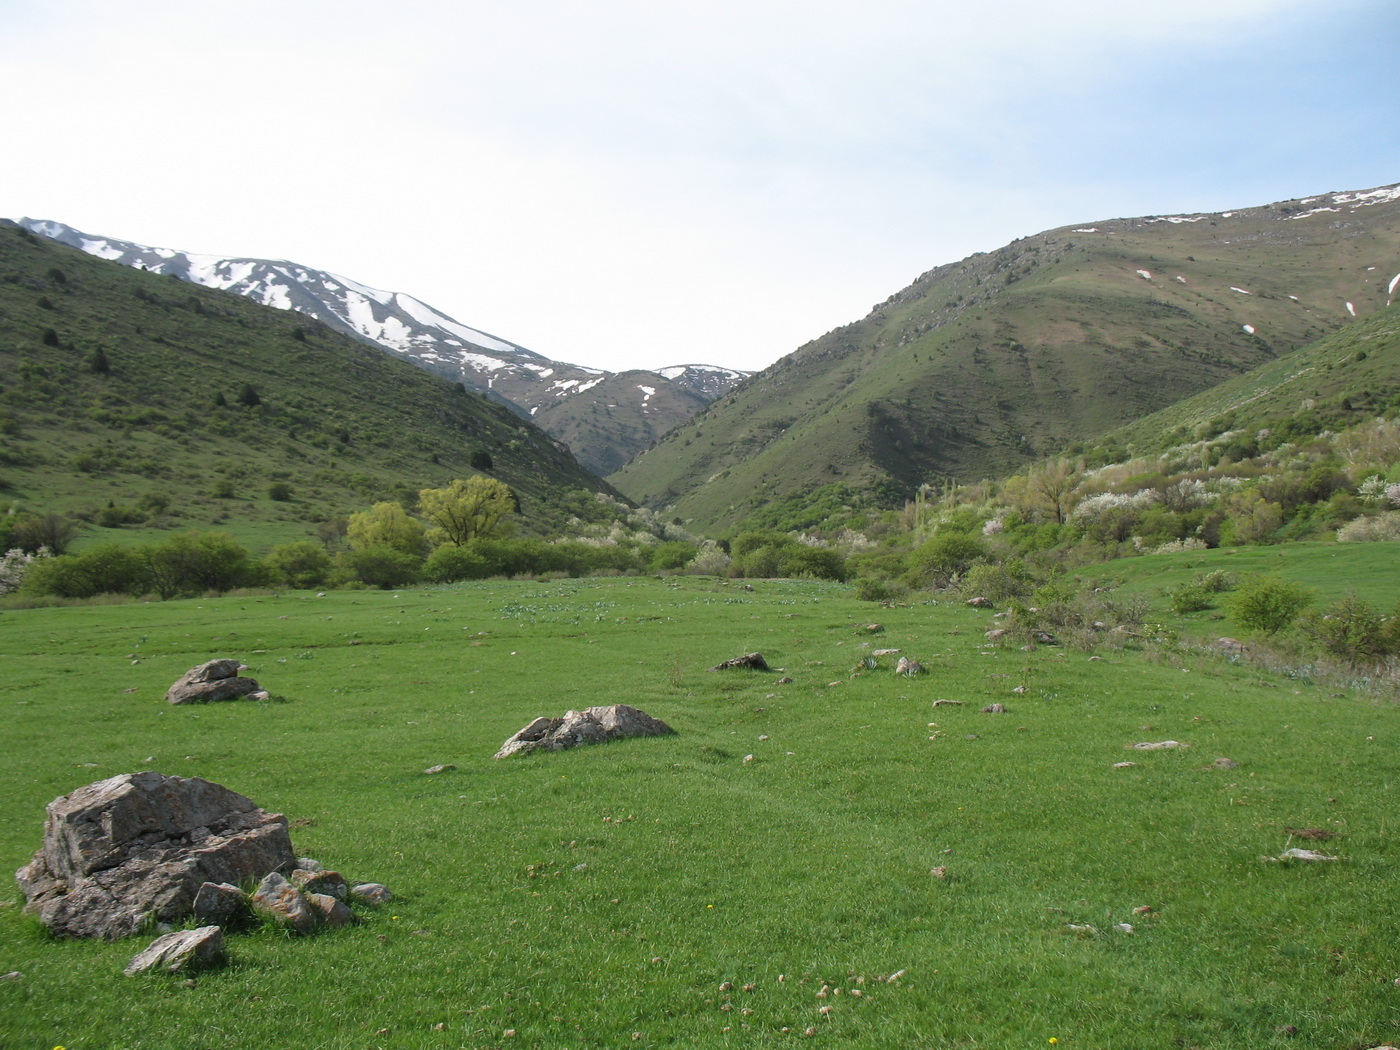 Талды-Булак, image of landscape/habitat.